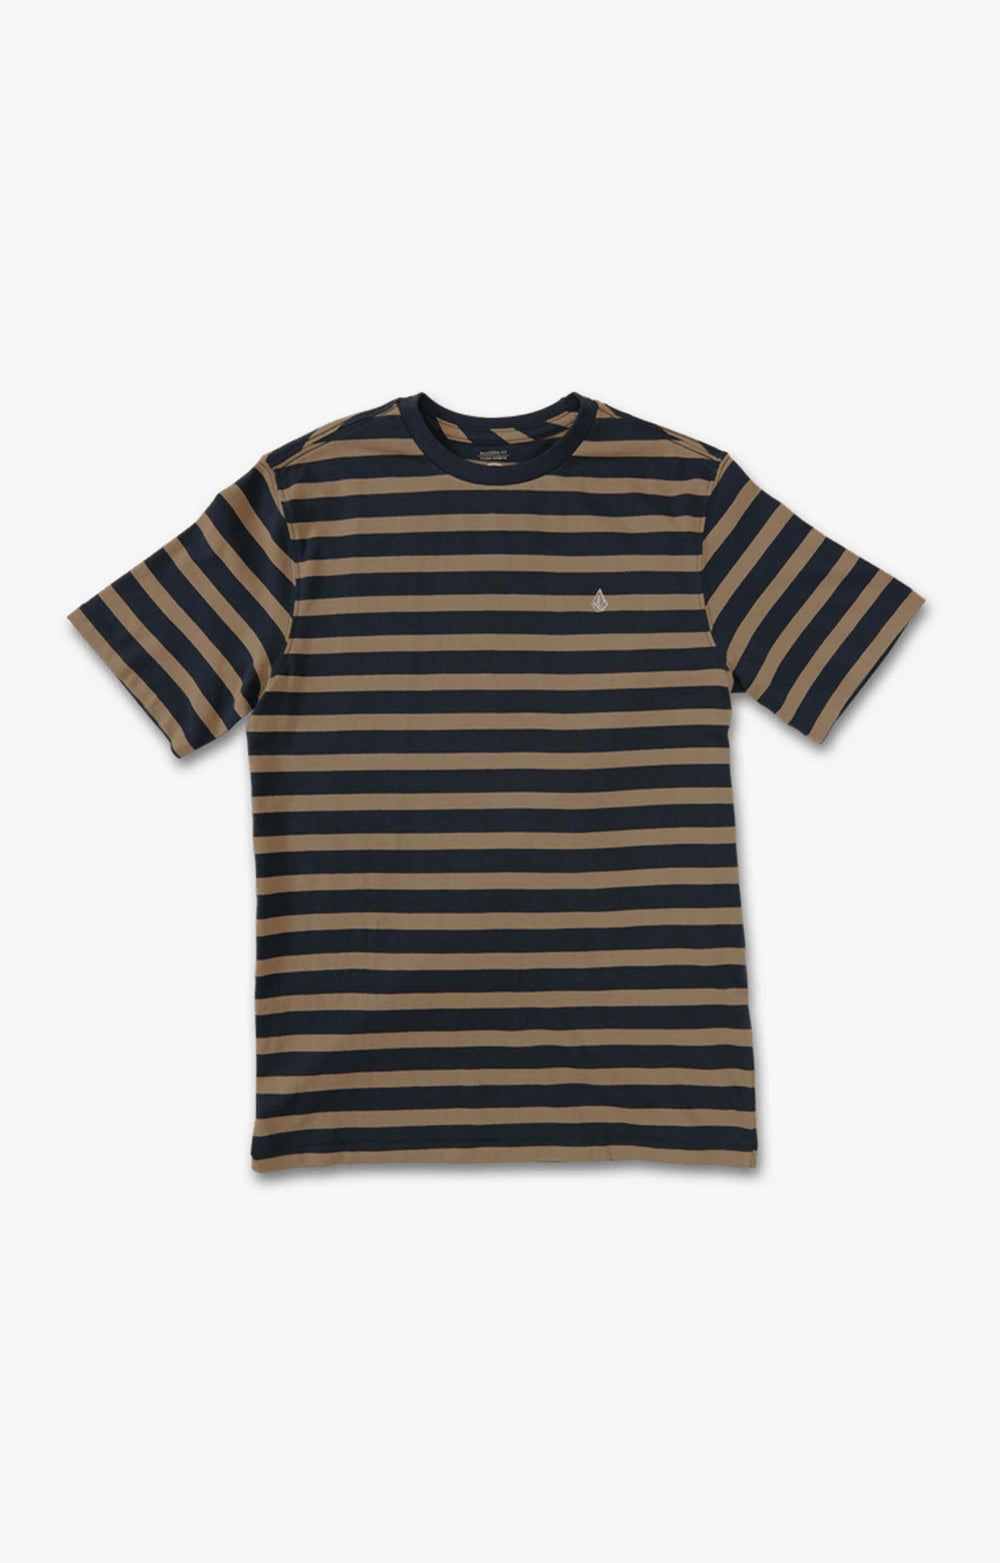 Volcom Halfax Stripe Youth T-Shirt, Navy